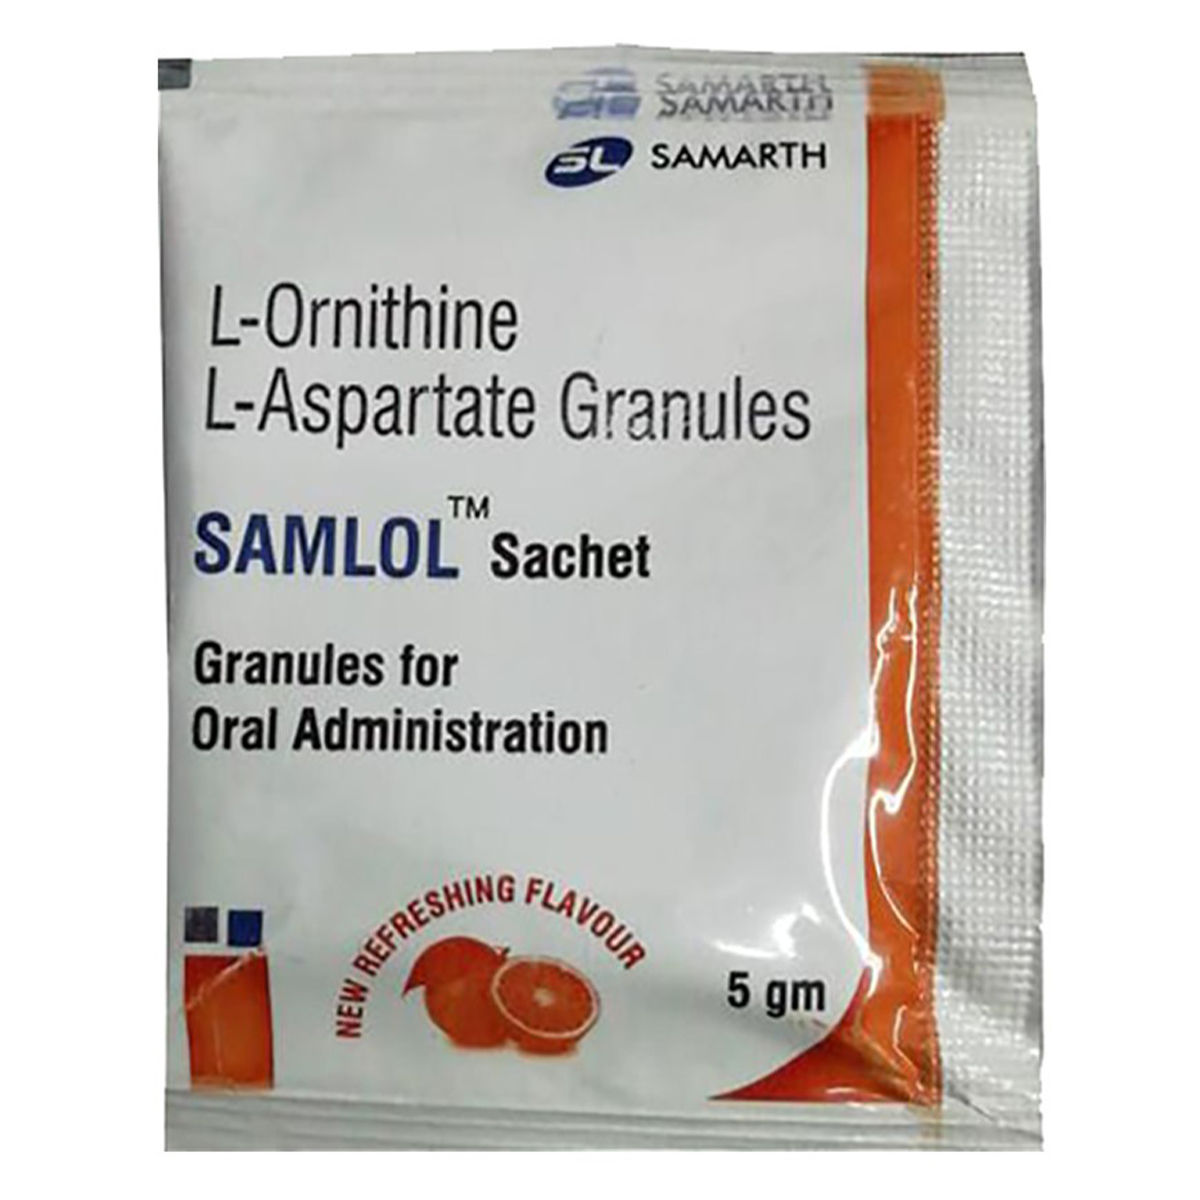 Buy Samlol Sachet 5 gm Online